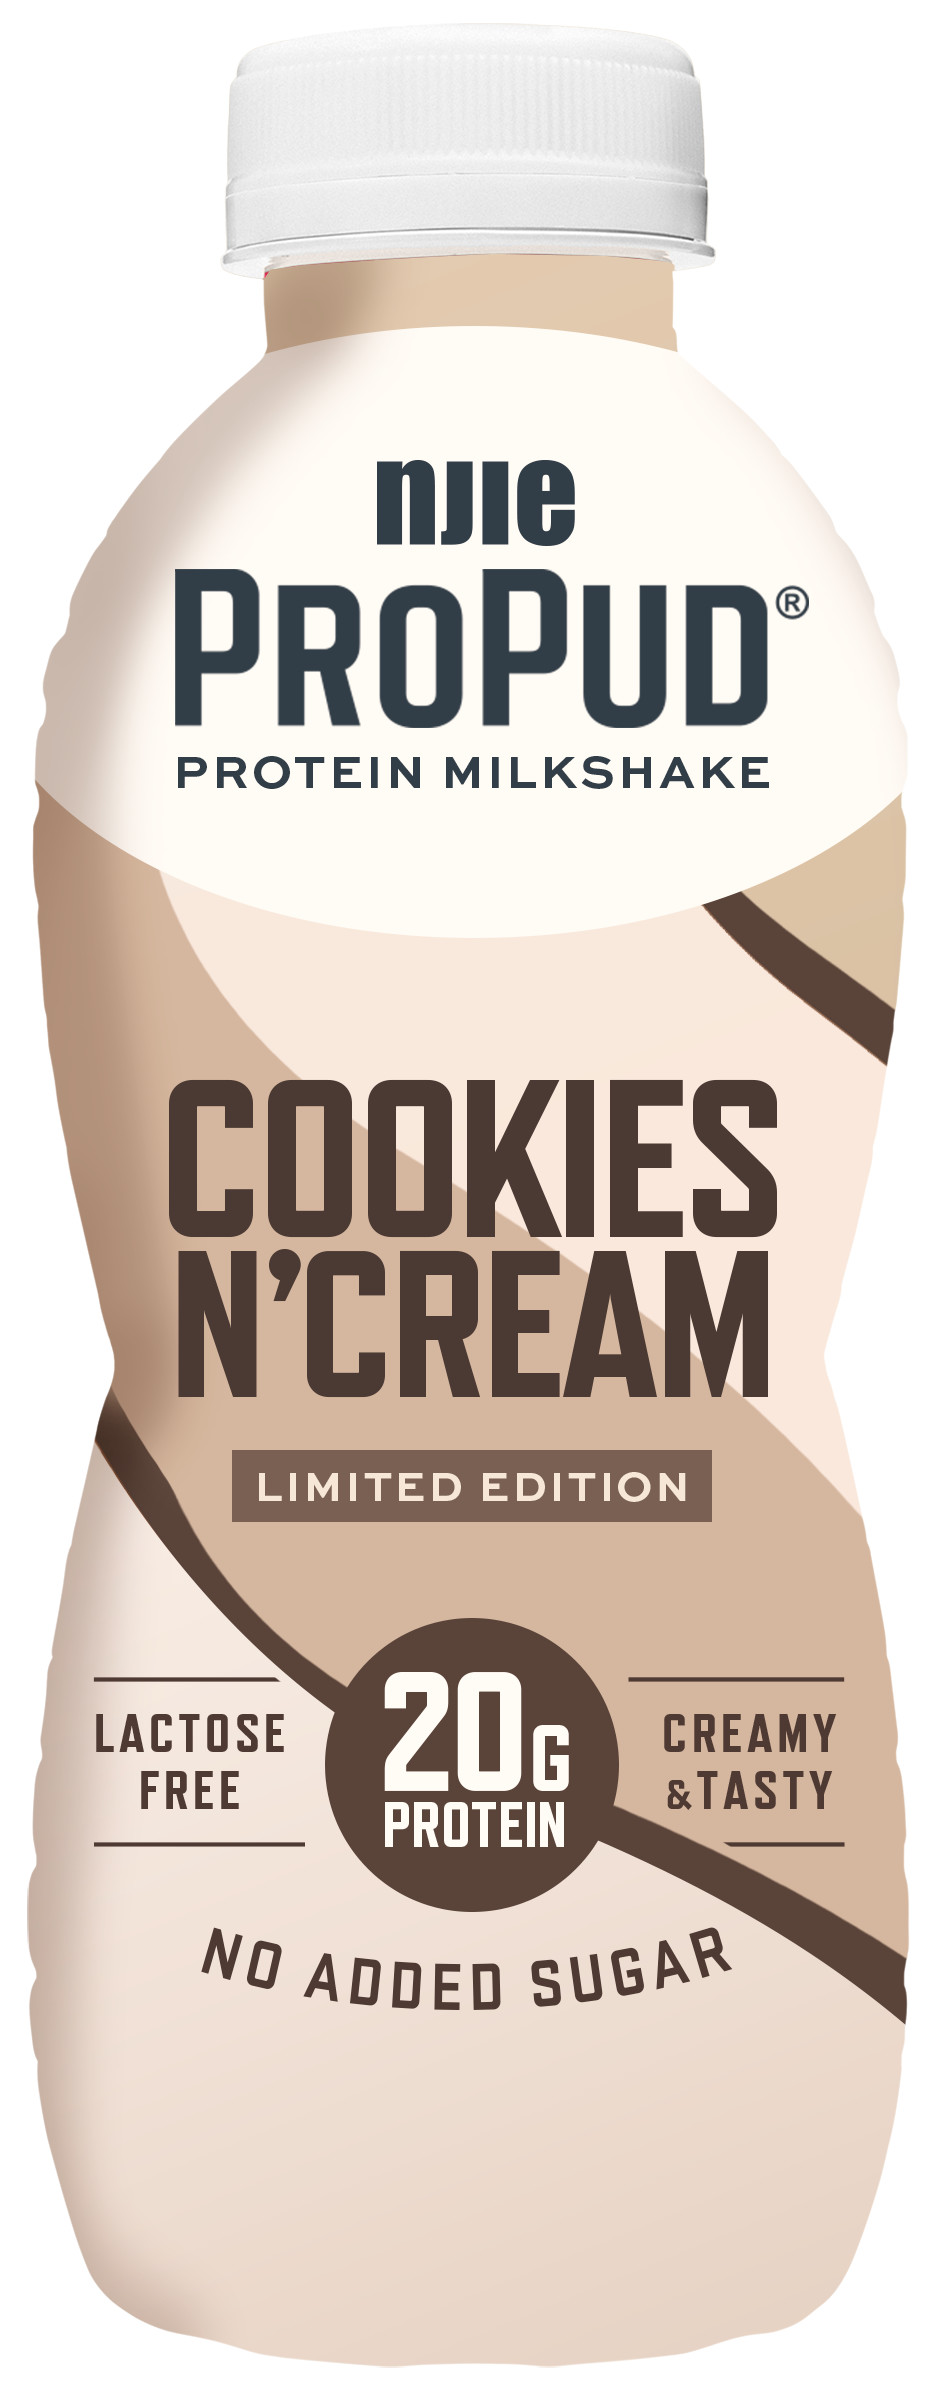 Propud Milkshake Cookies N'Cream 330ml